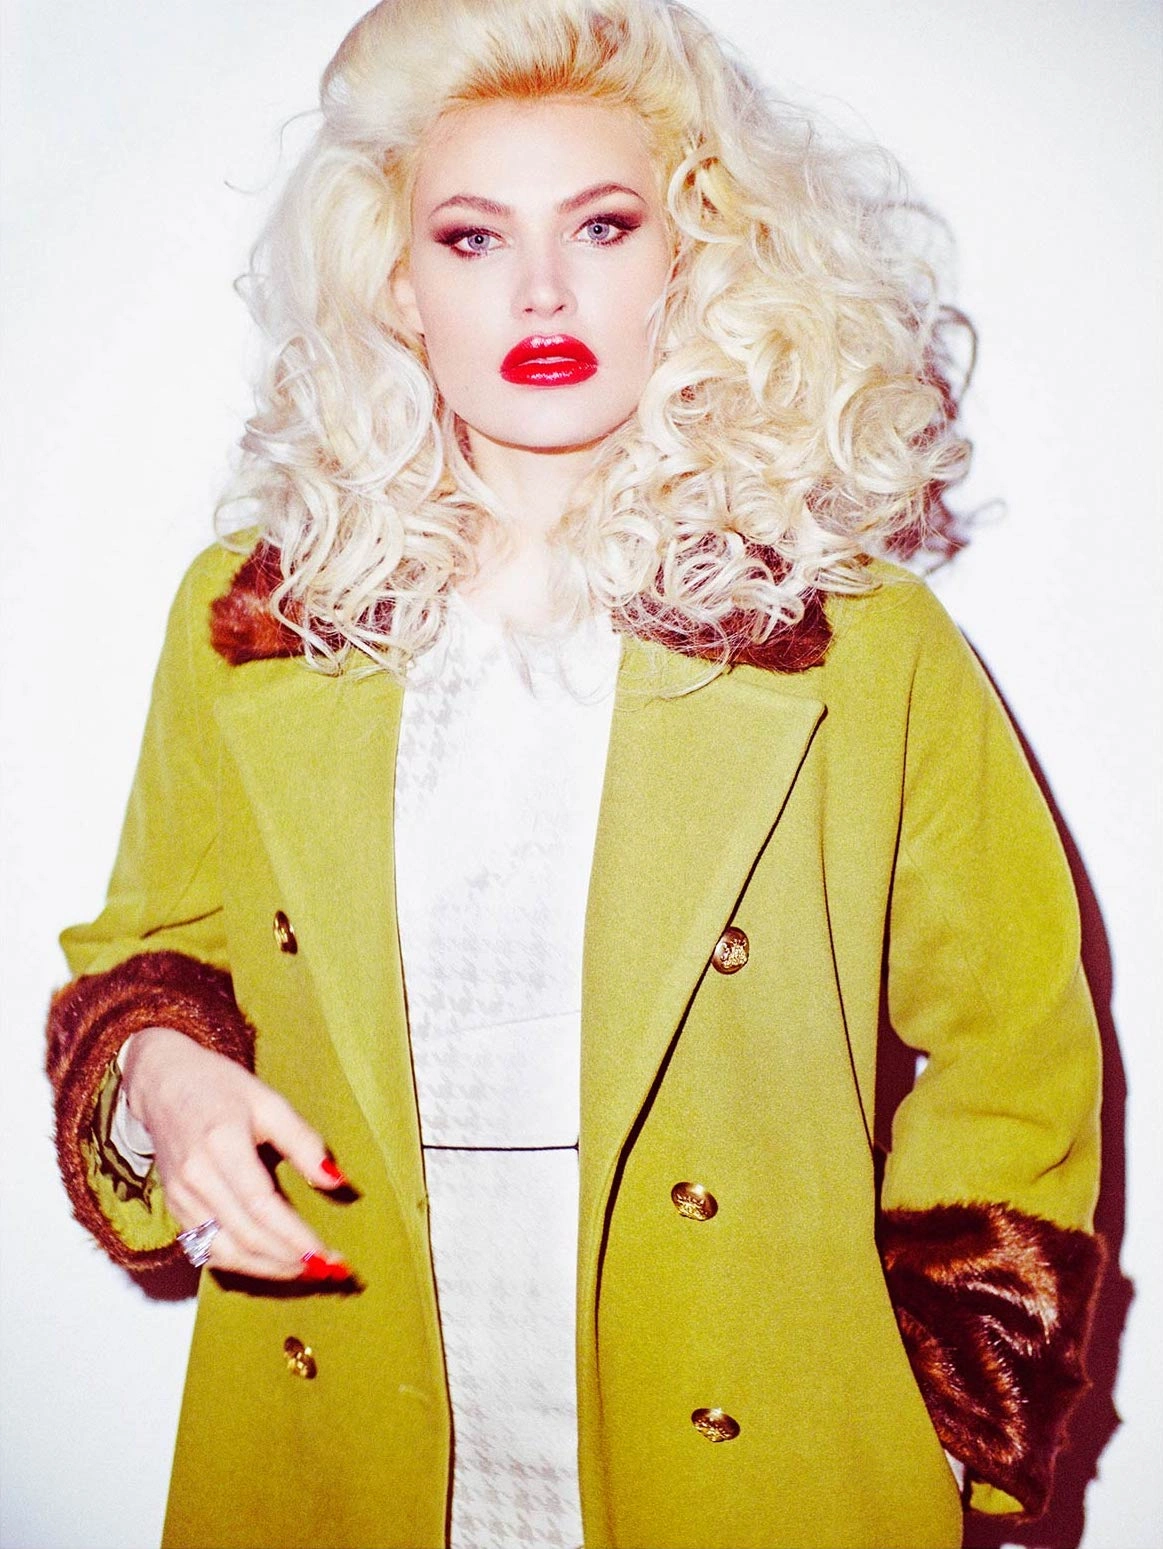 Blonde Frau mit roten Lippen und lockigen Haaren. Make-up von Denise Drahtmueller